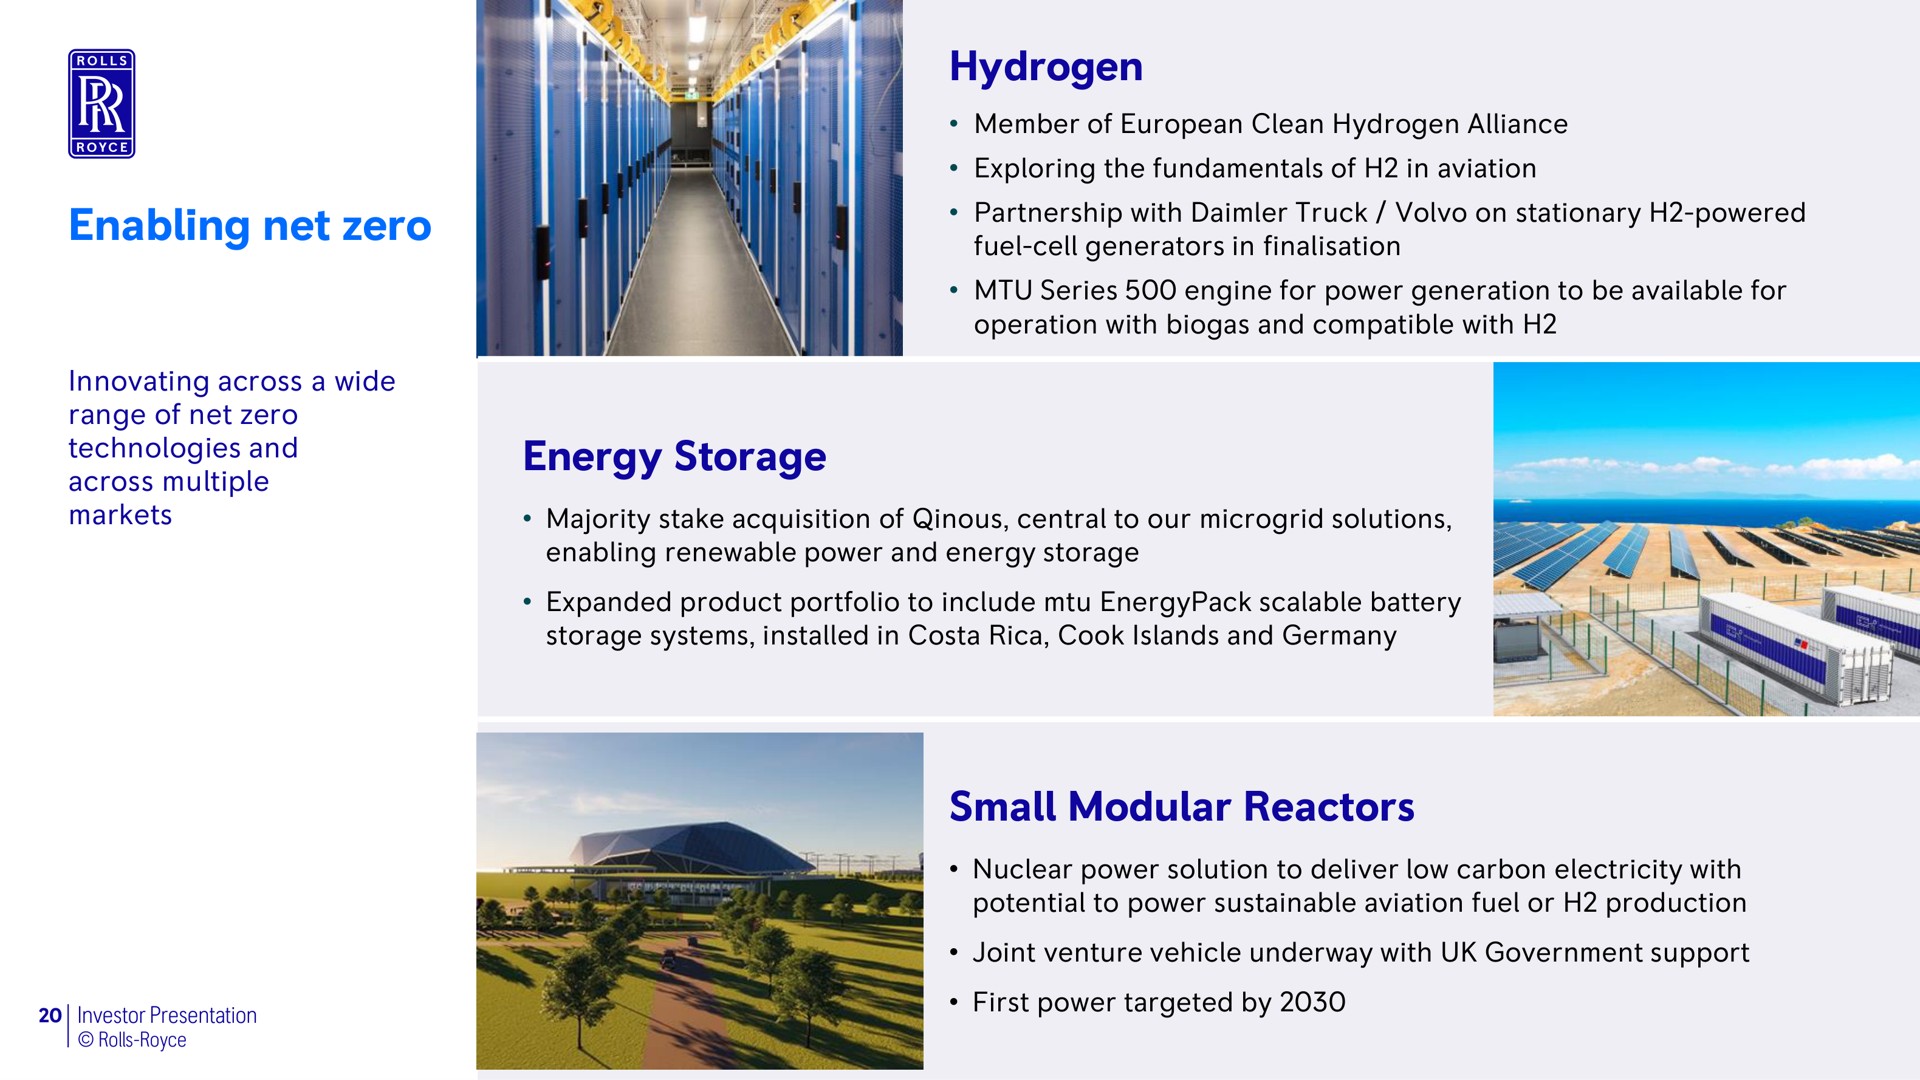 hydrogen energy storage small modular reactors enabling net zero | Rolls-Royce Holdings